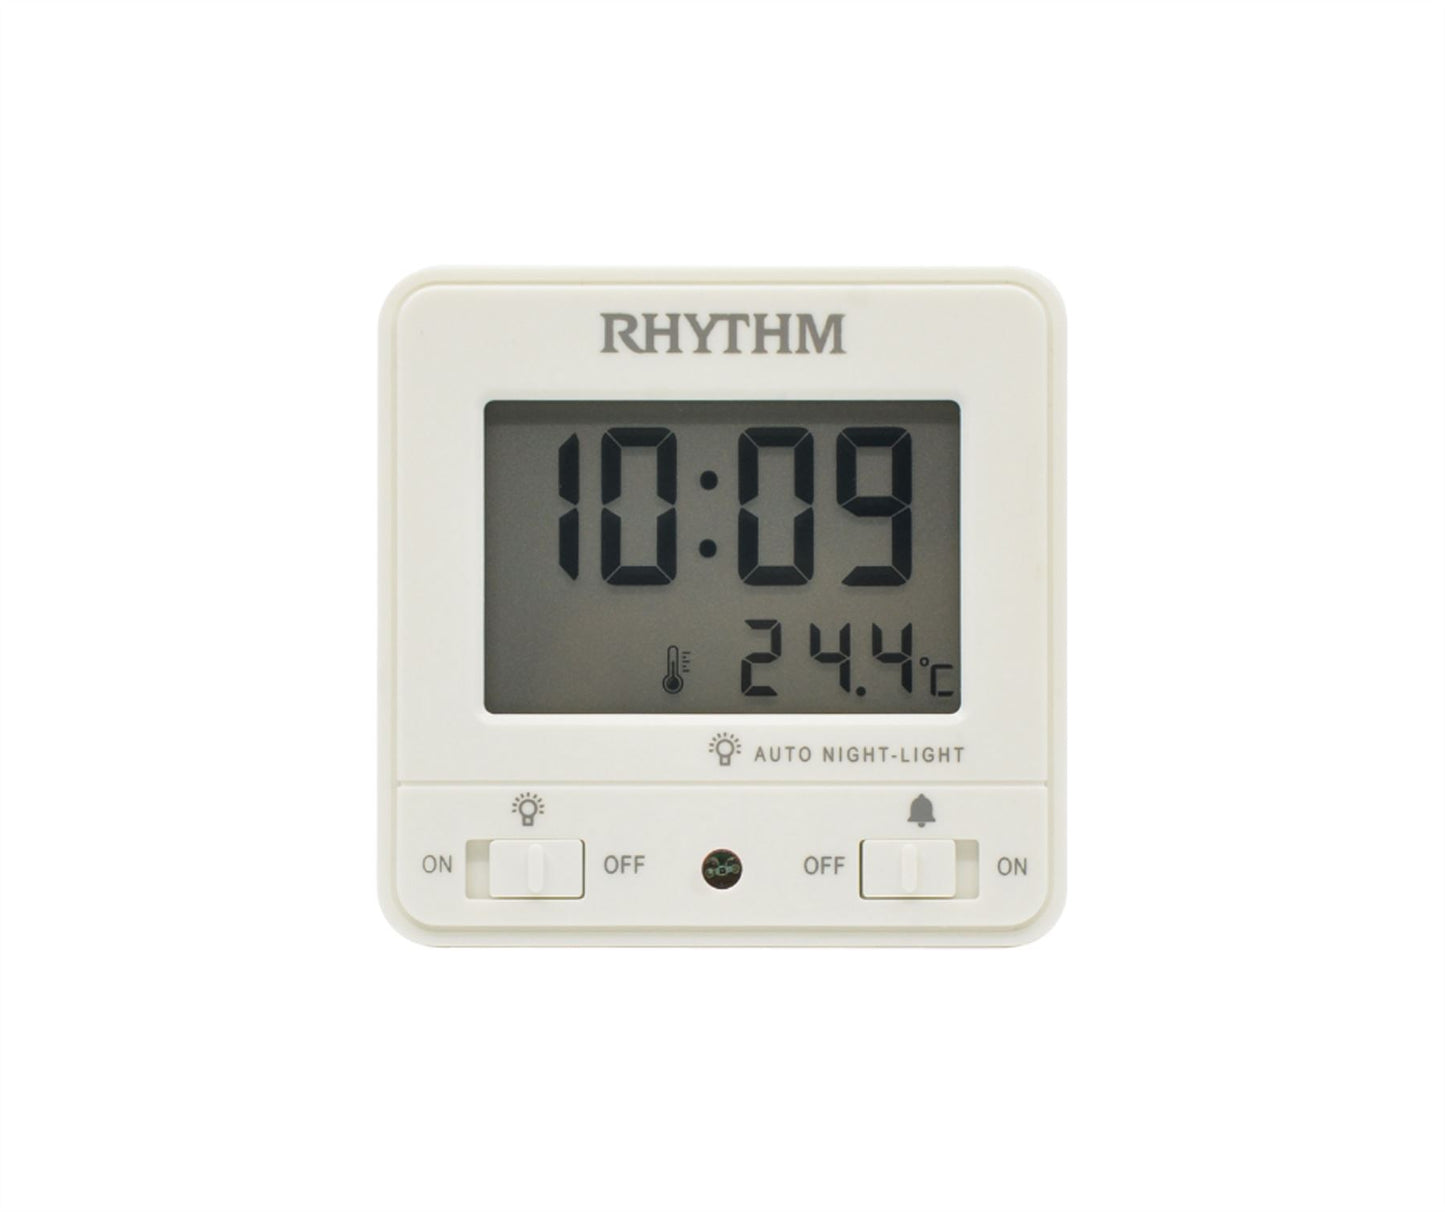 Rhythm LCD Alarm Table Clock Beep/Snz/LED/Cal/Therm/Hygro